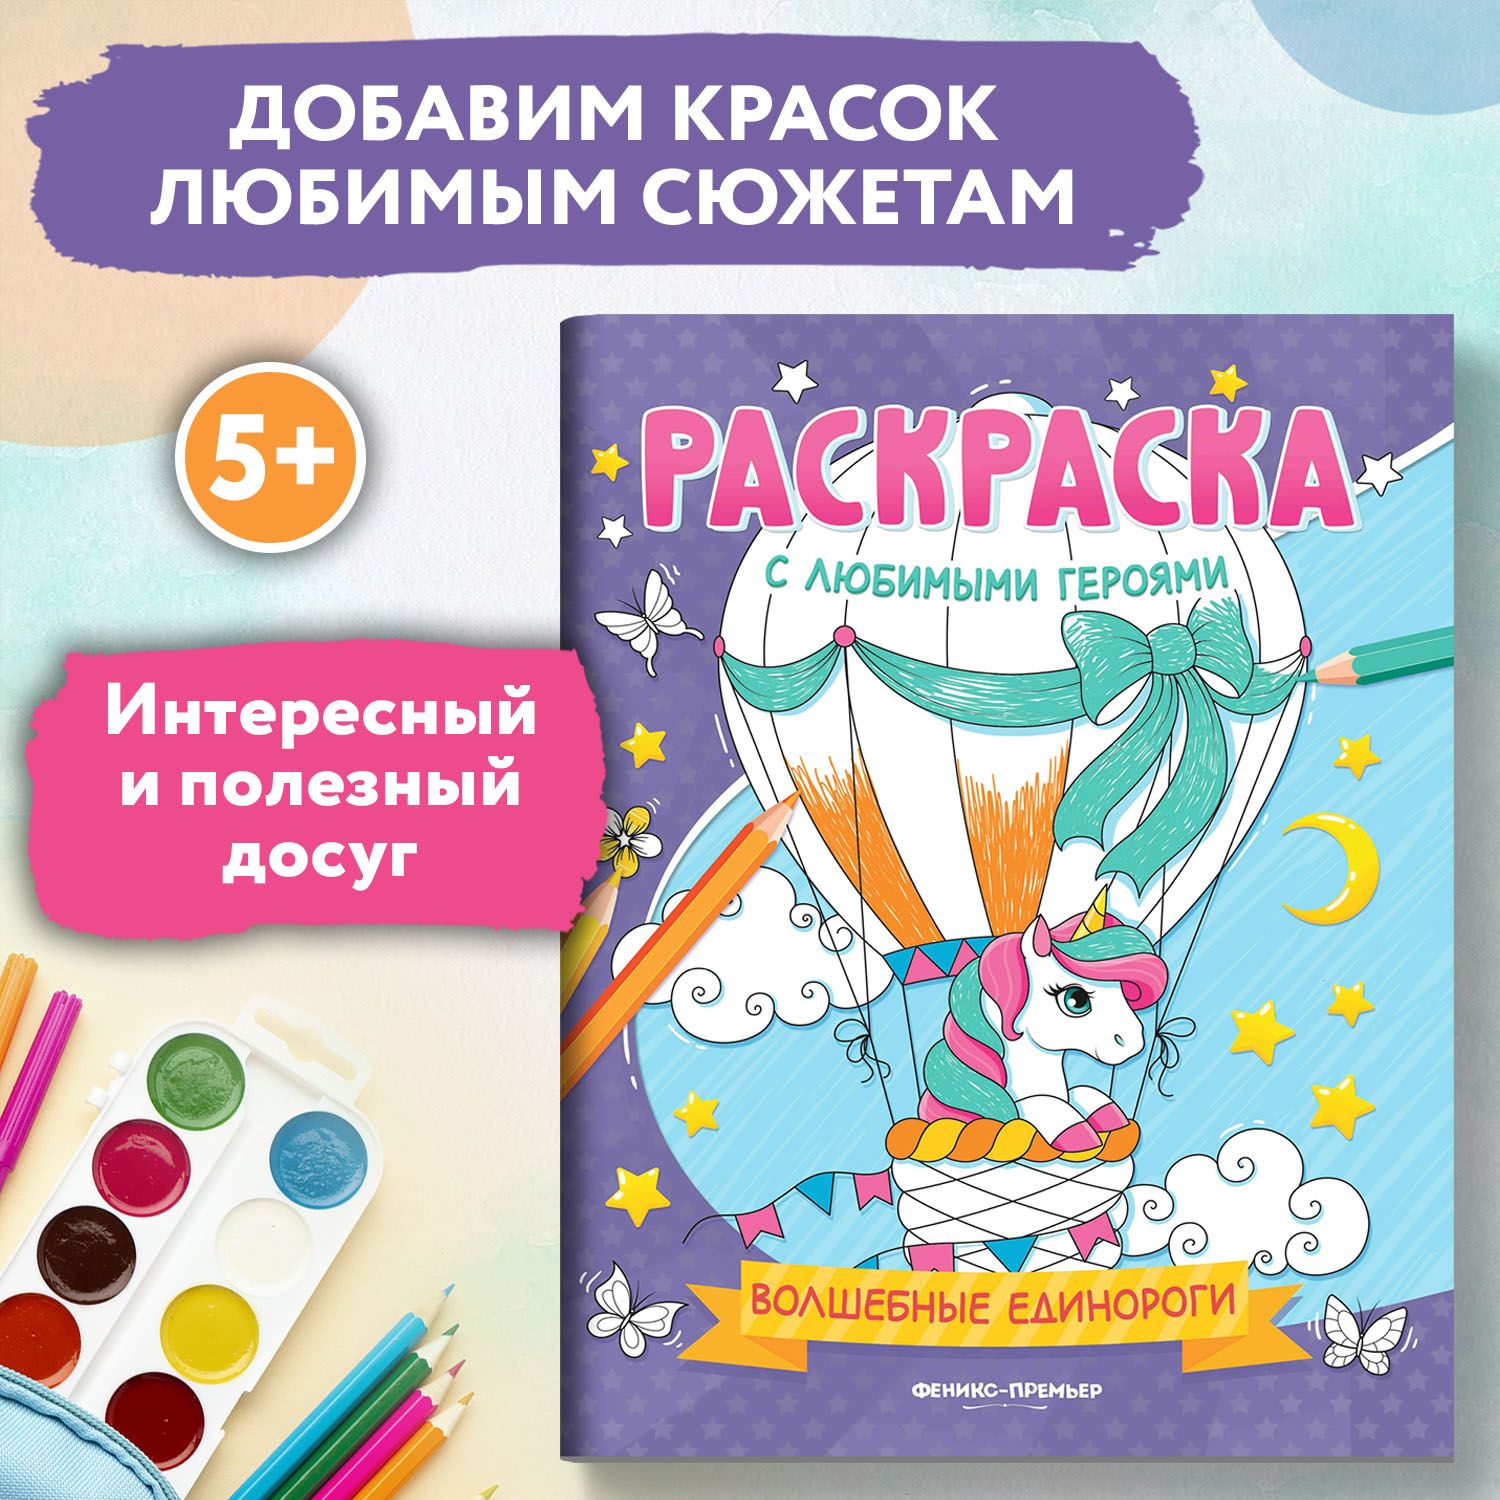 Советские раскраски для детей: умные и познавательные книги - Life in the USSR